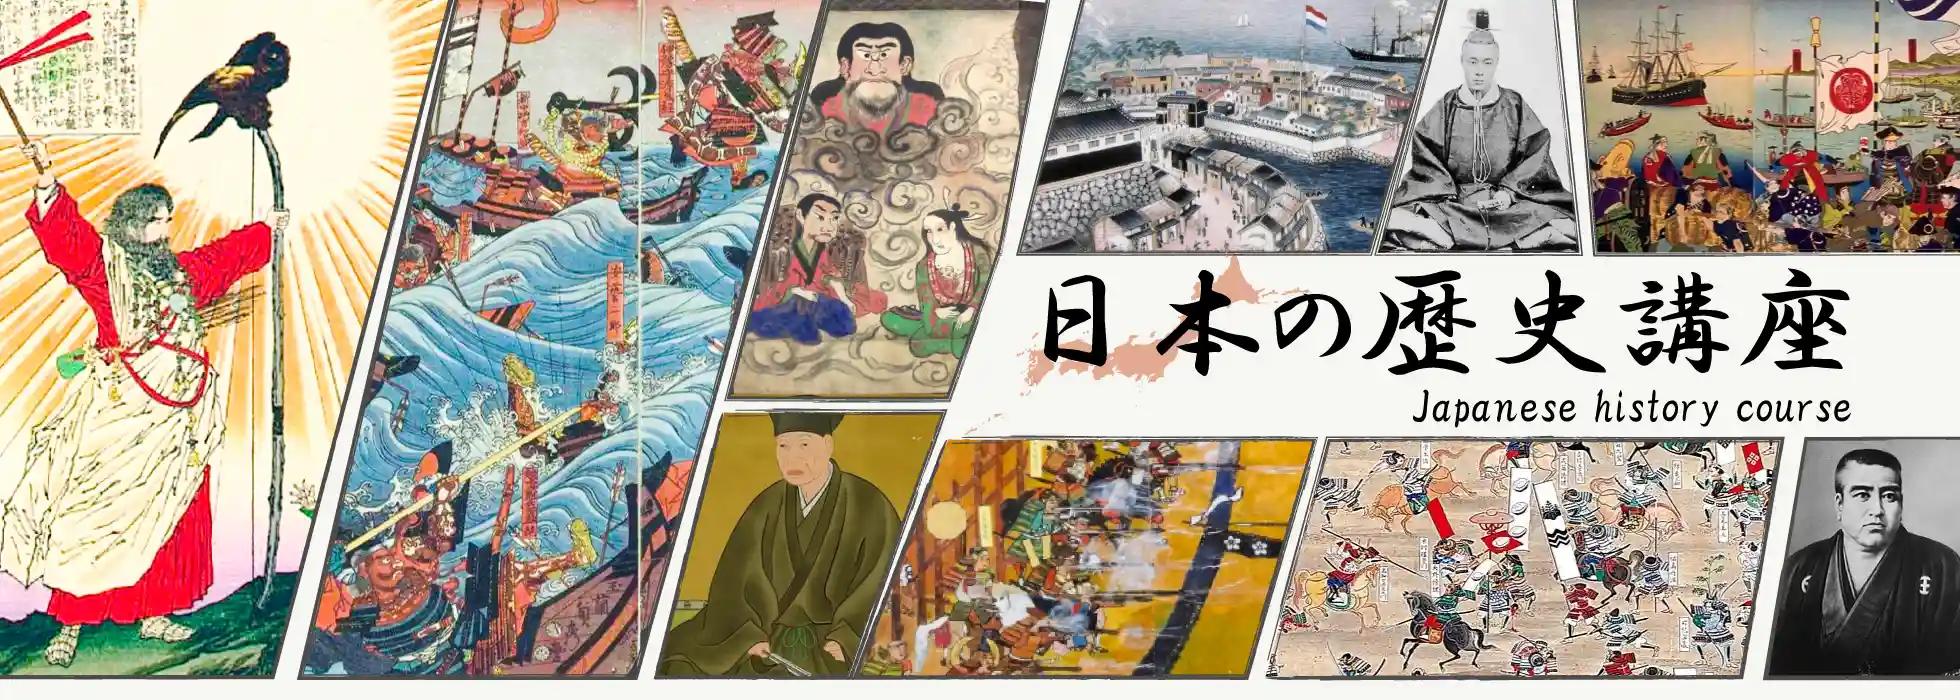 在线日本历史课程